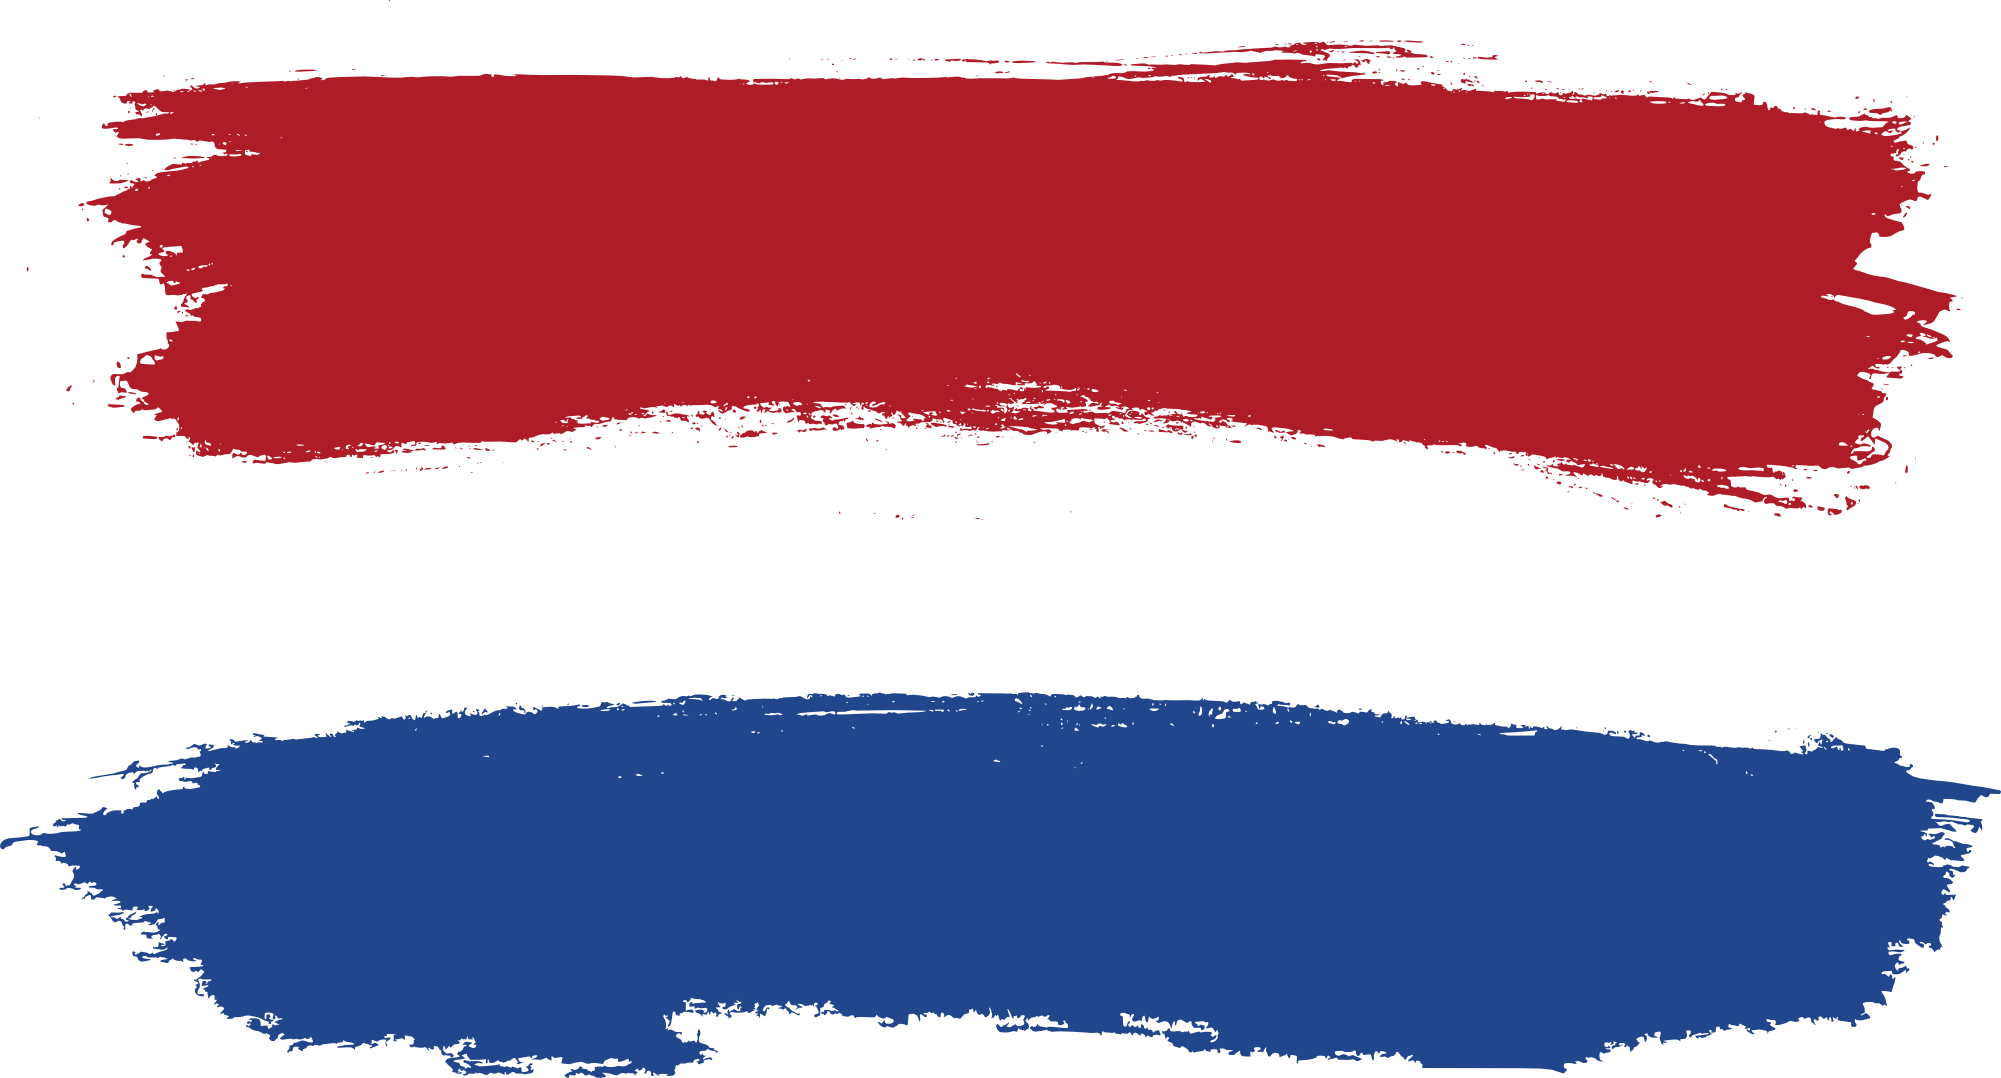 flag of netherlands